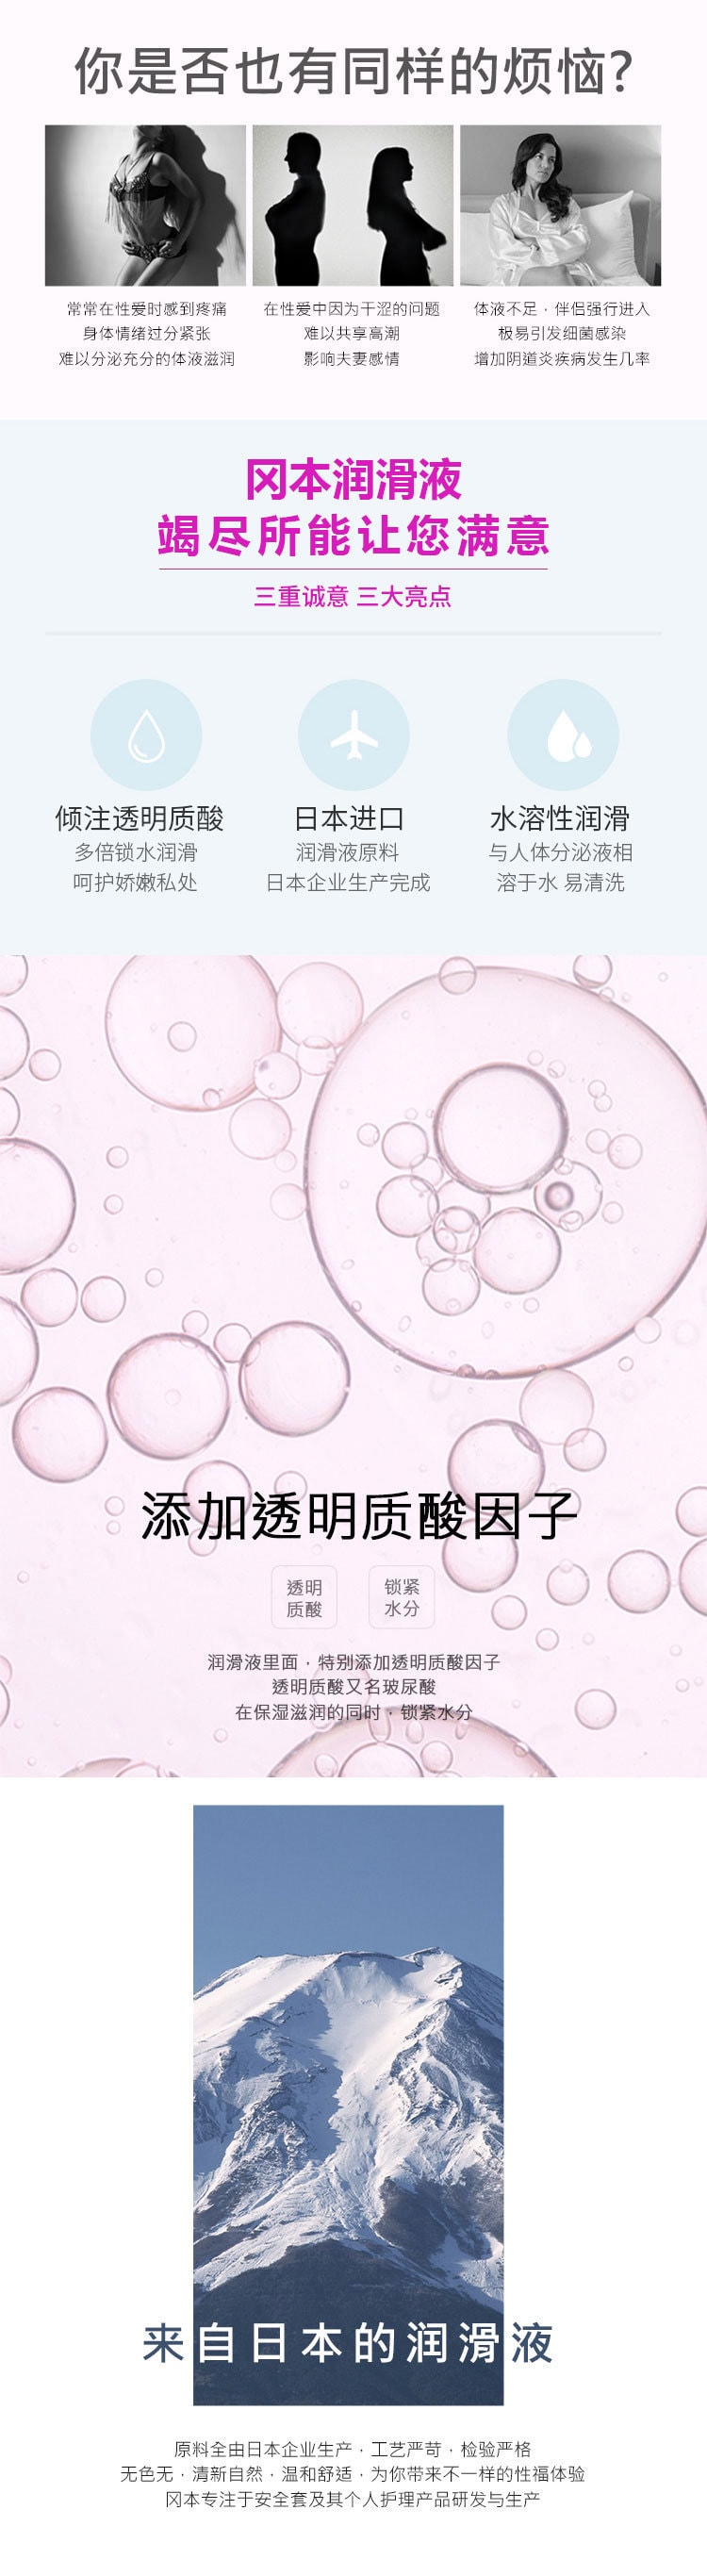 日本OKAMOTO冈本 002透明质酸水溶性润滑剂 60ml